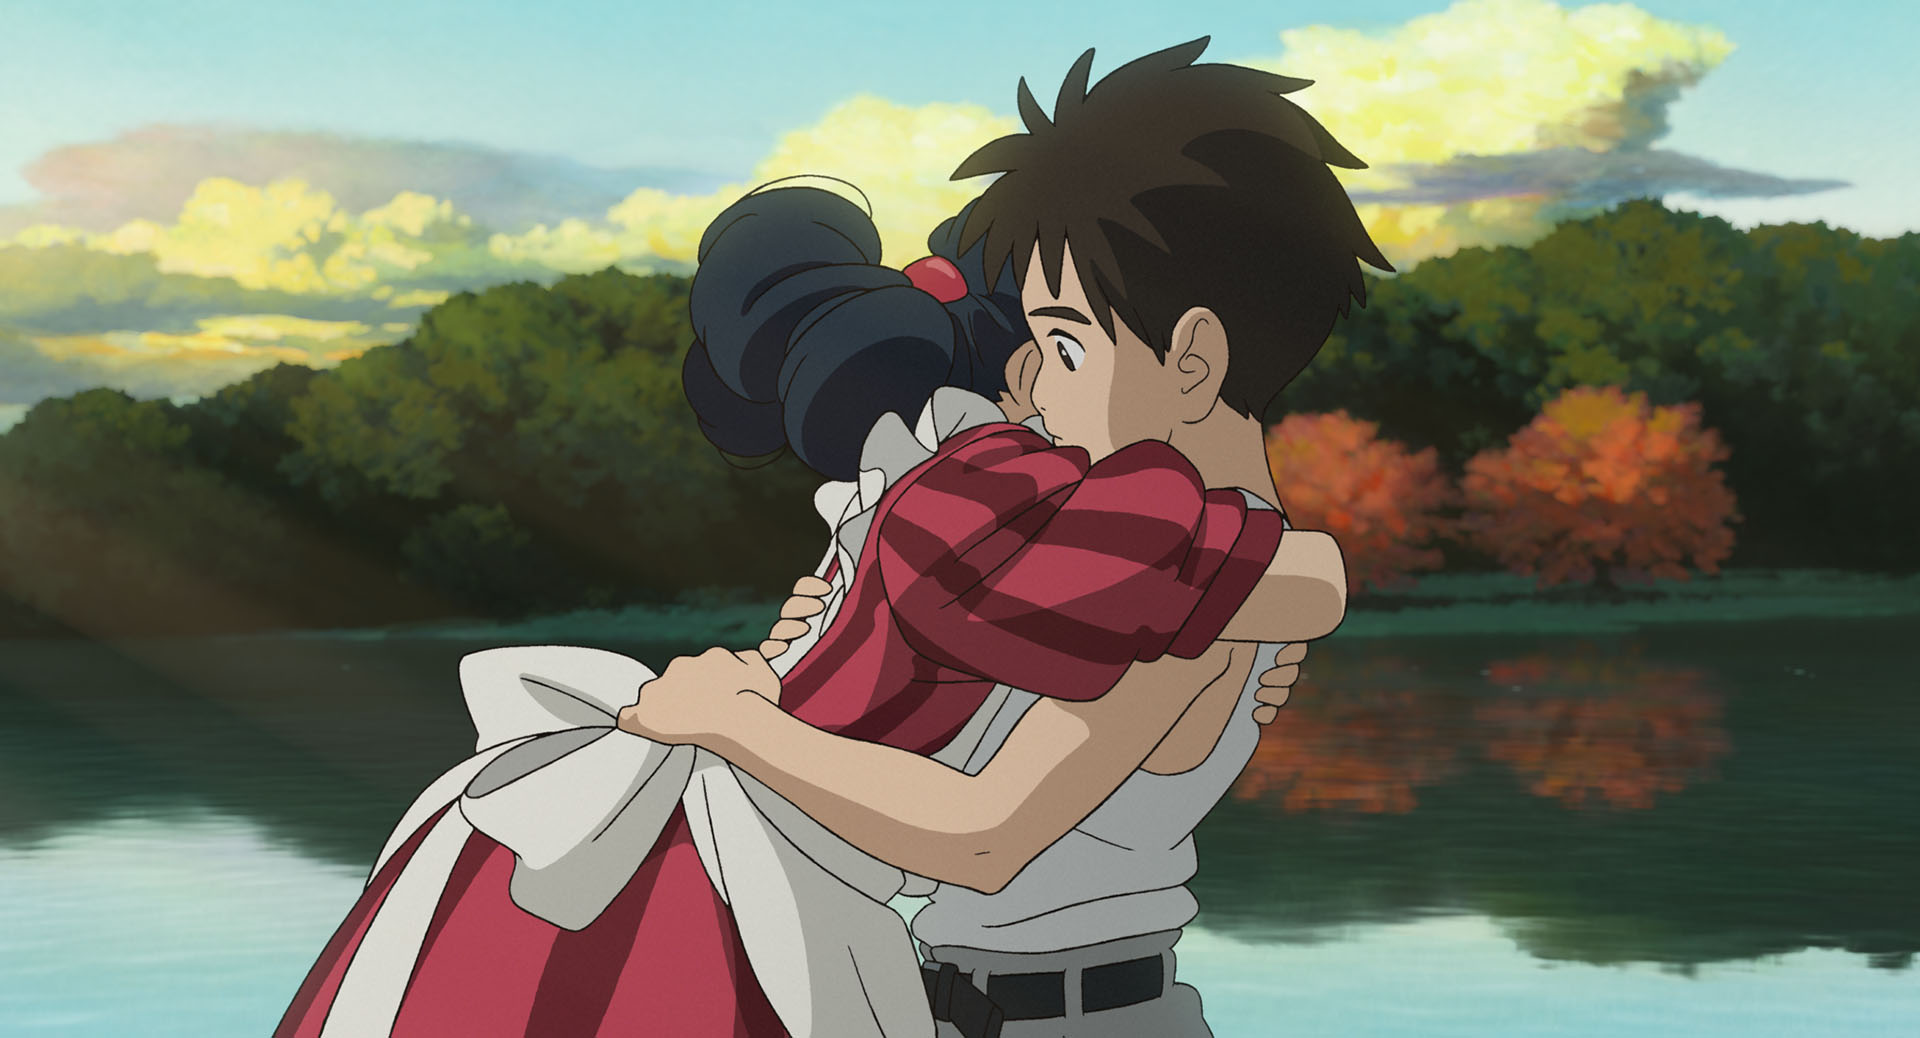 宮崎駿在角色的性格刻畫中，我們很容易看見「真誠」與「溫柔」。